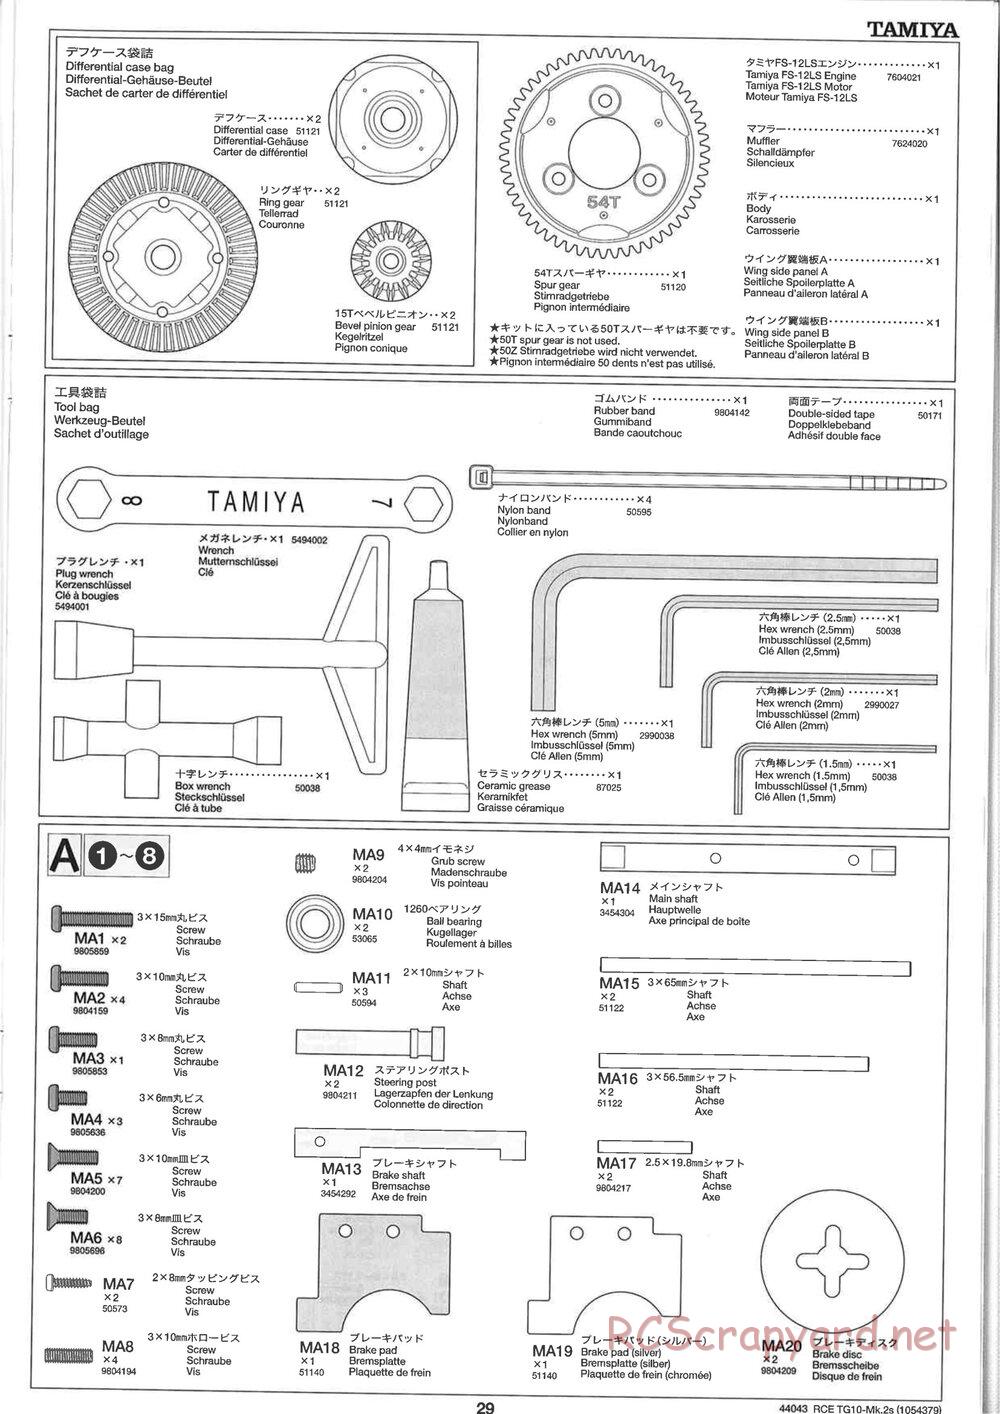 Tamiya - TG10 Mk.2s Chassis - Manual - Page 30